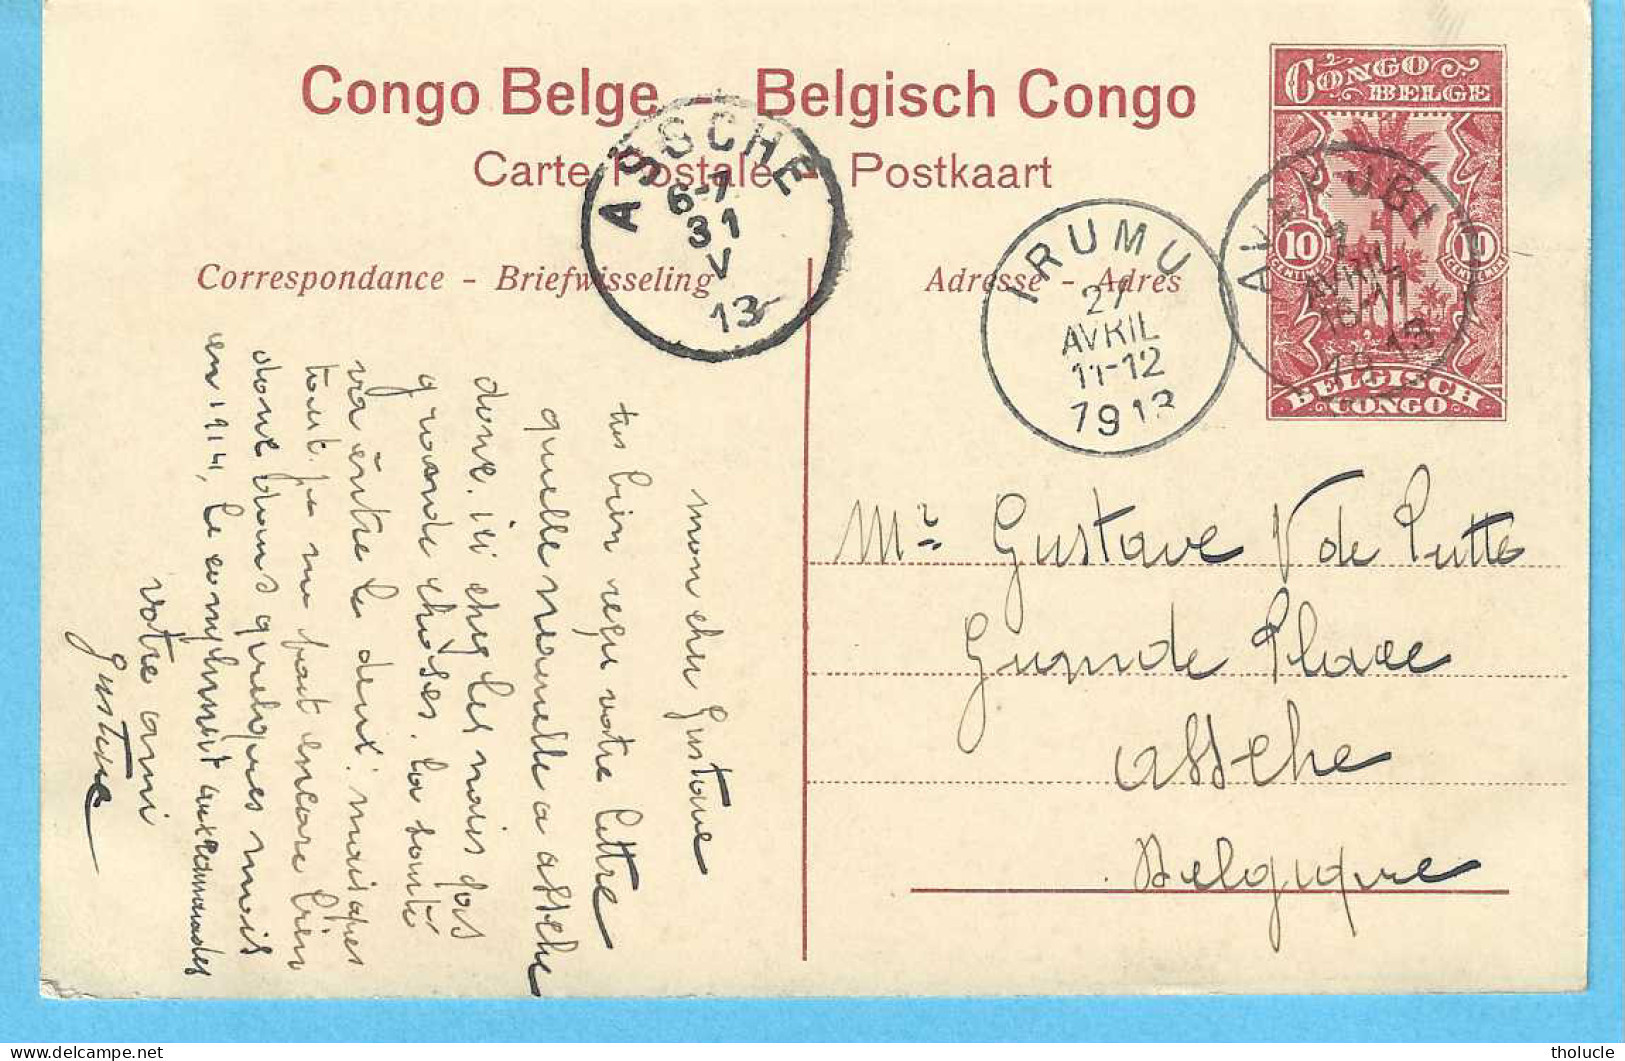 Belgisch Congo Belge-Entier Postal Illustré 10c-1913-Léopoldville-Les Bassins-De Dokken-Cachet-IRUMU-AVAKUBI-1913" - Postwaardestukken